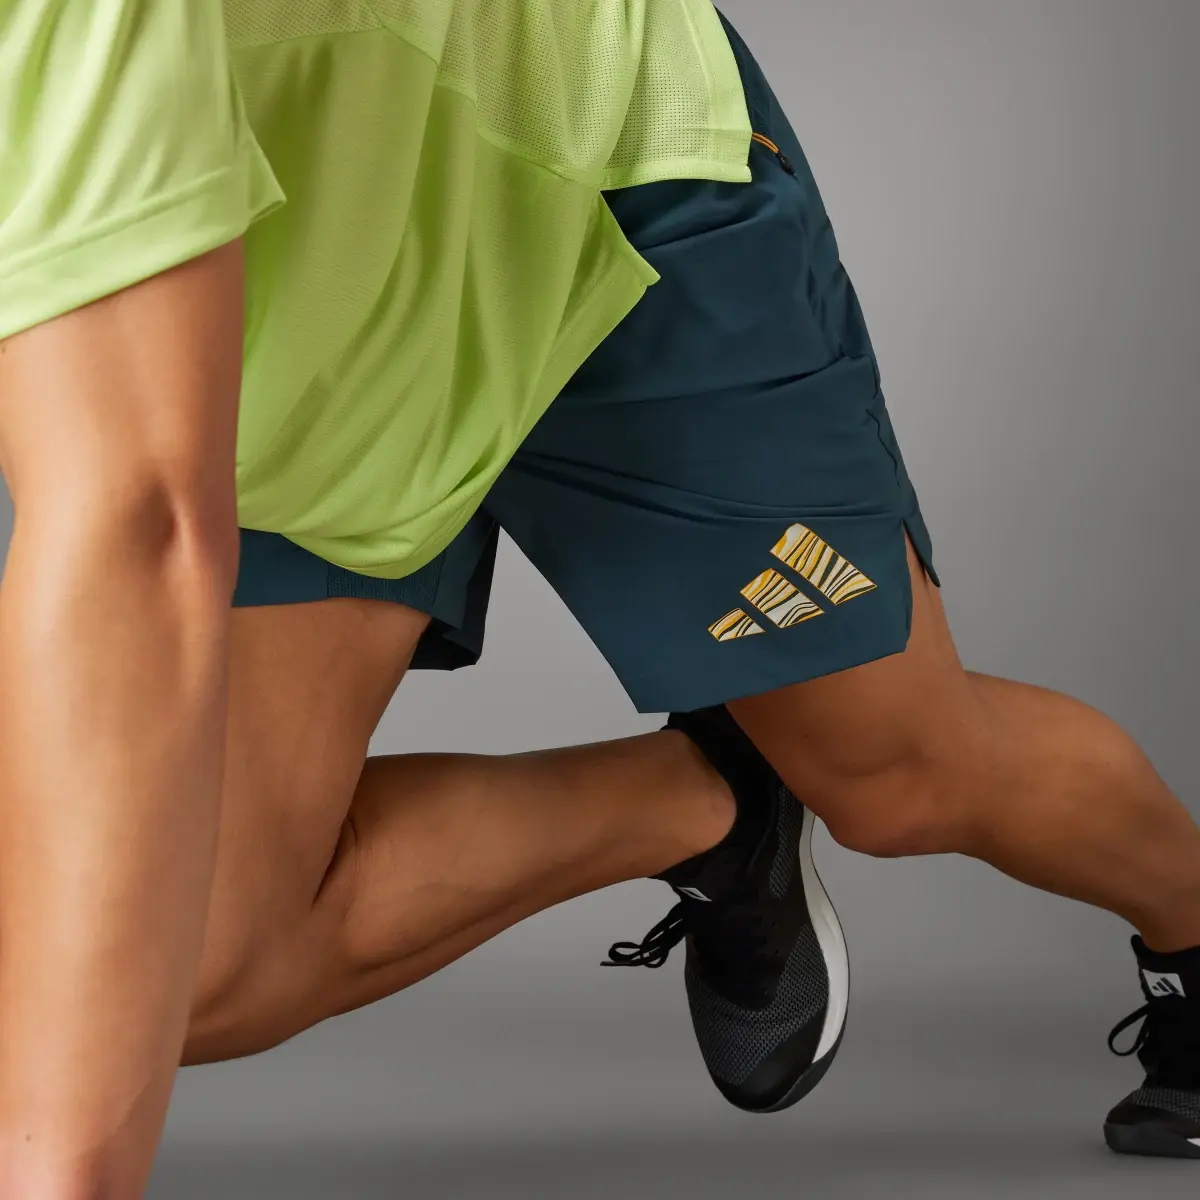 Adidas HIIT Training Shorts. 3